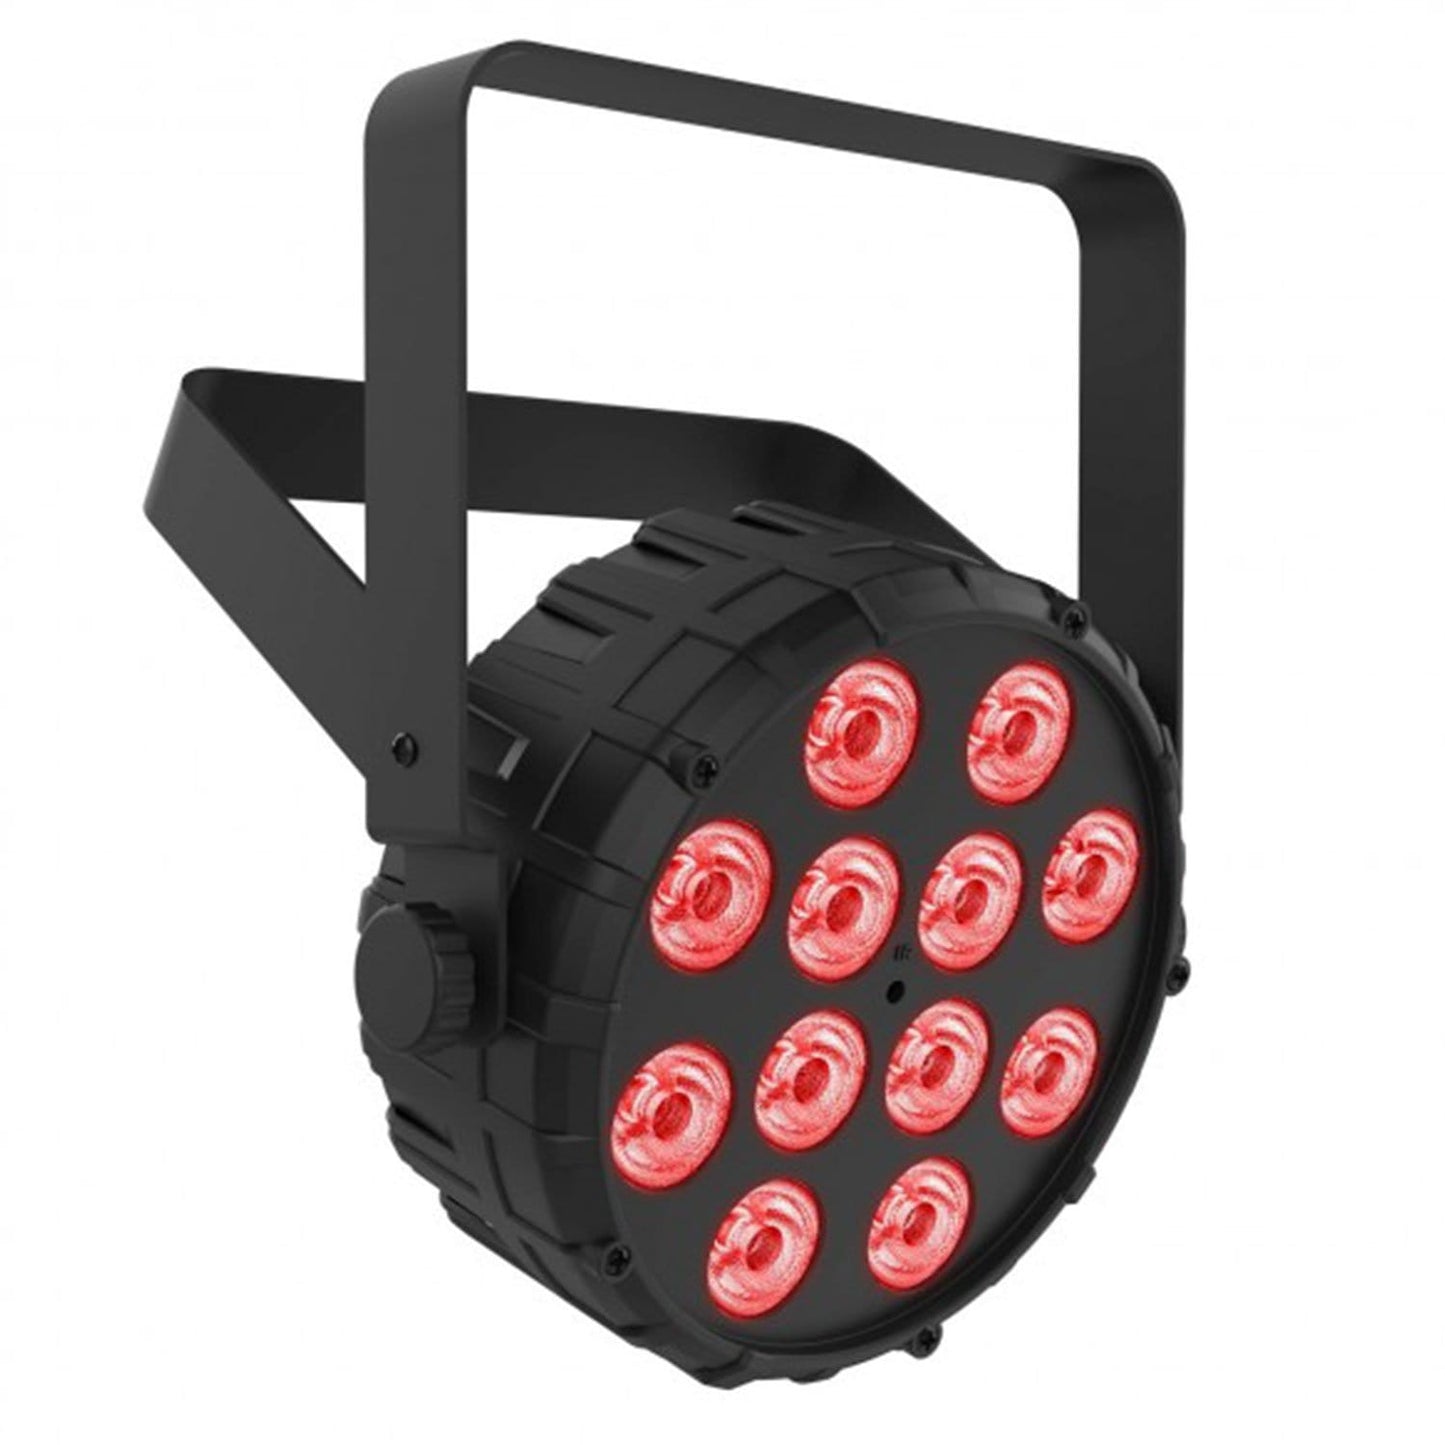 Chauvet SlimPAR T12 BT LED Par Wash Light 12-Pack with Gator Bags - PSSL ProSound and Stage Lighting